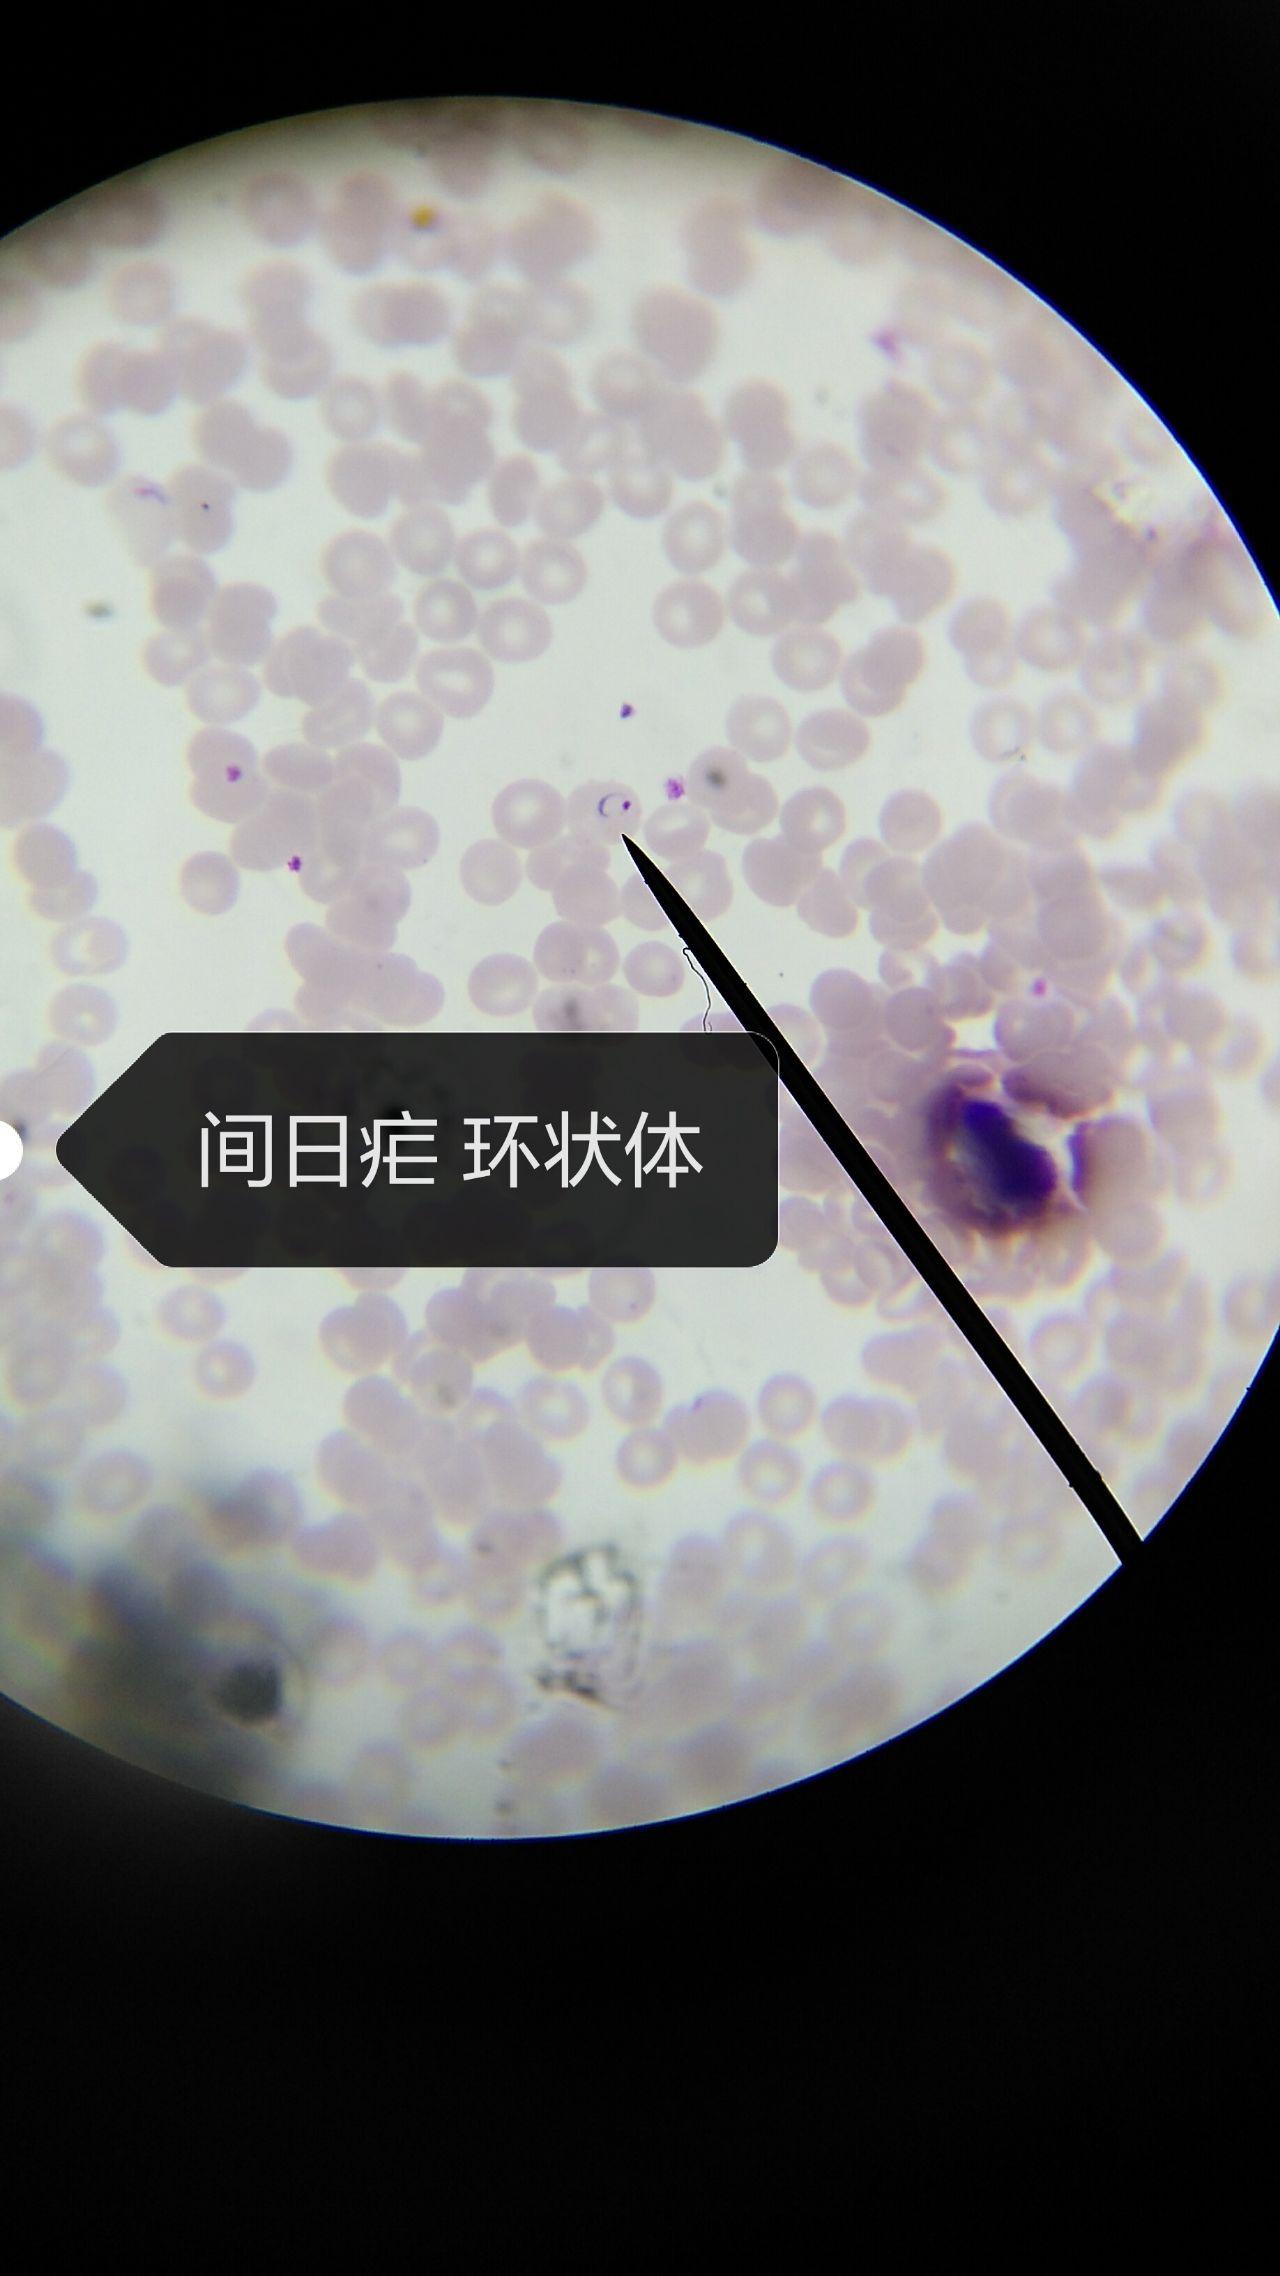 红血球中的疟原虫 库存图片. 图片 包括有 研究, 疾病, 科学, 污迹, 阶段, 环形, 测试, 检查 - 161613619